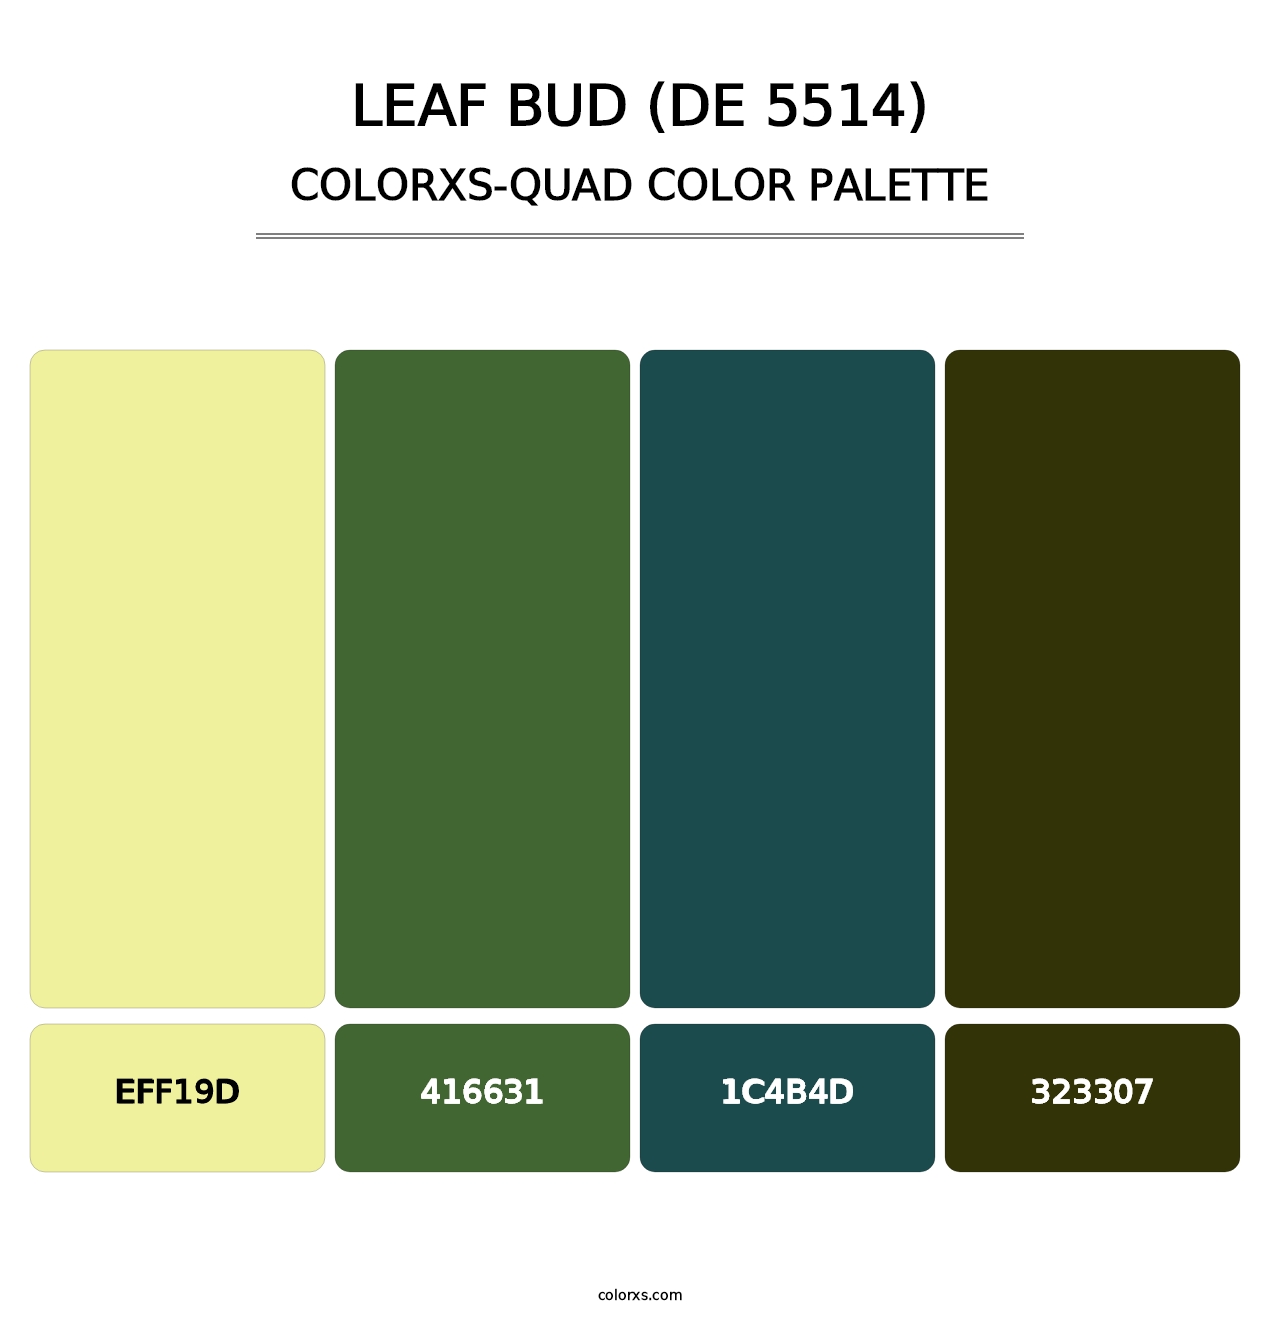 Leaf Bud (DE 5514) - Colorxs Quad Palette